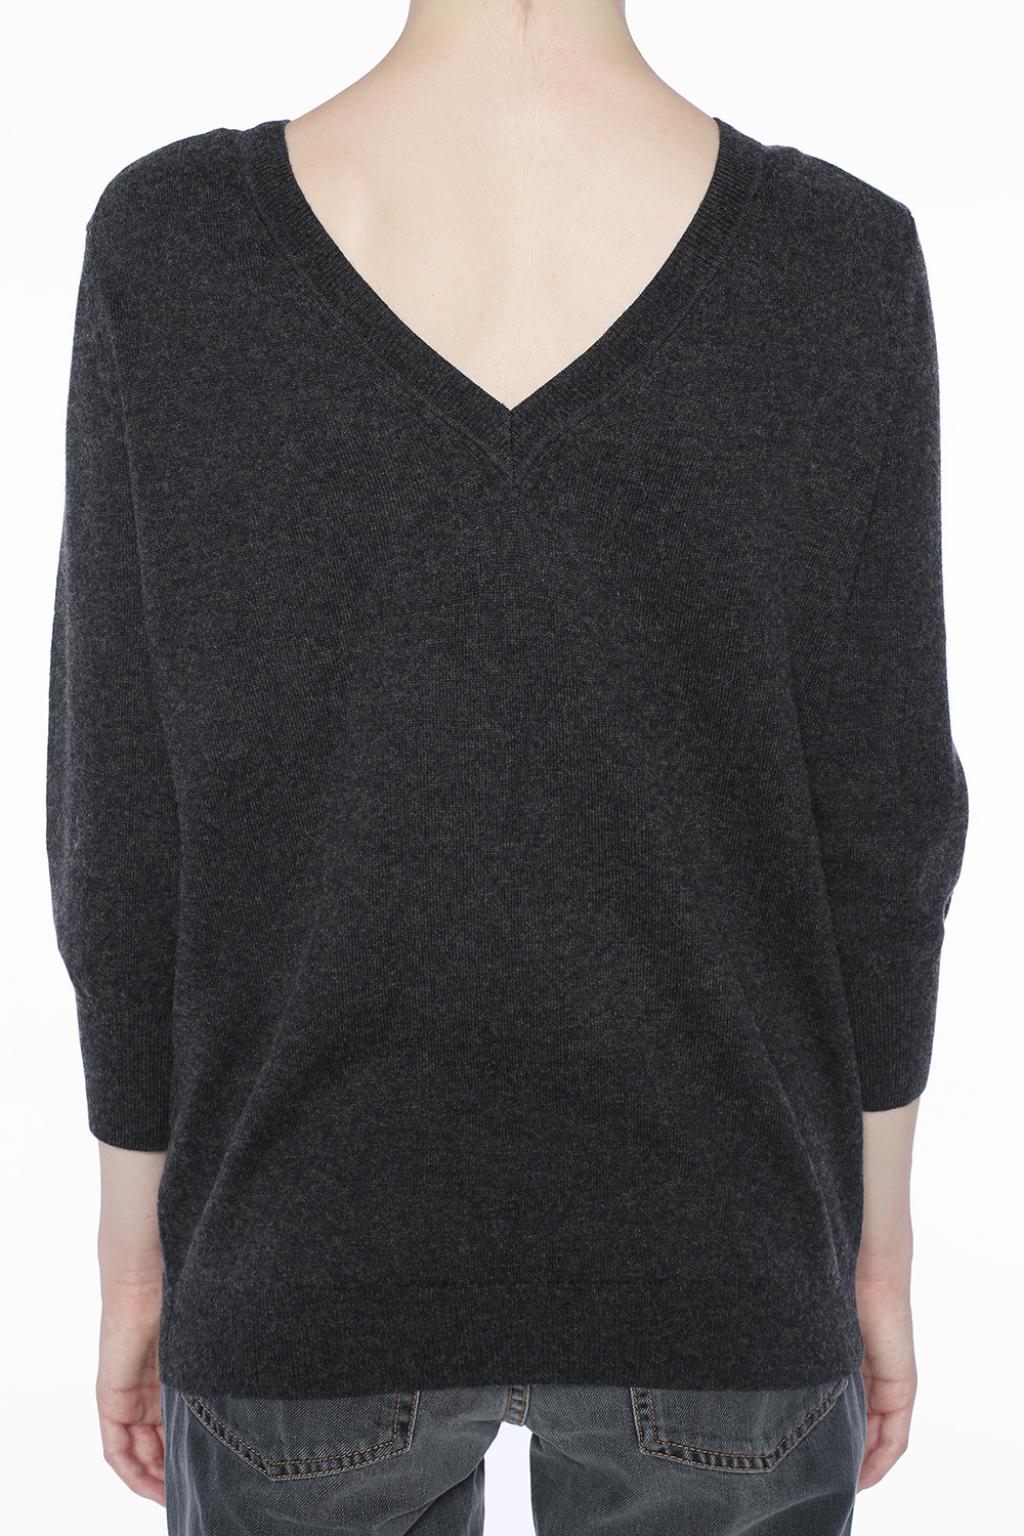 Fahrenheit vedtage Monumental V-neck sweater Isabel Marant Etoile - Vitkac US